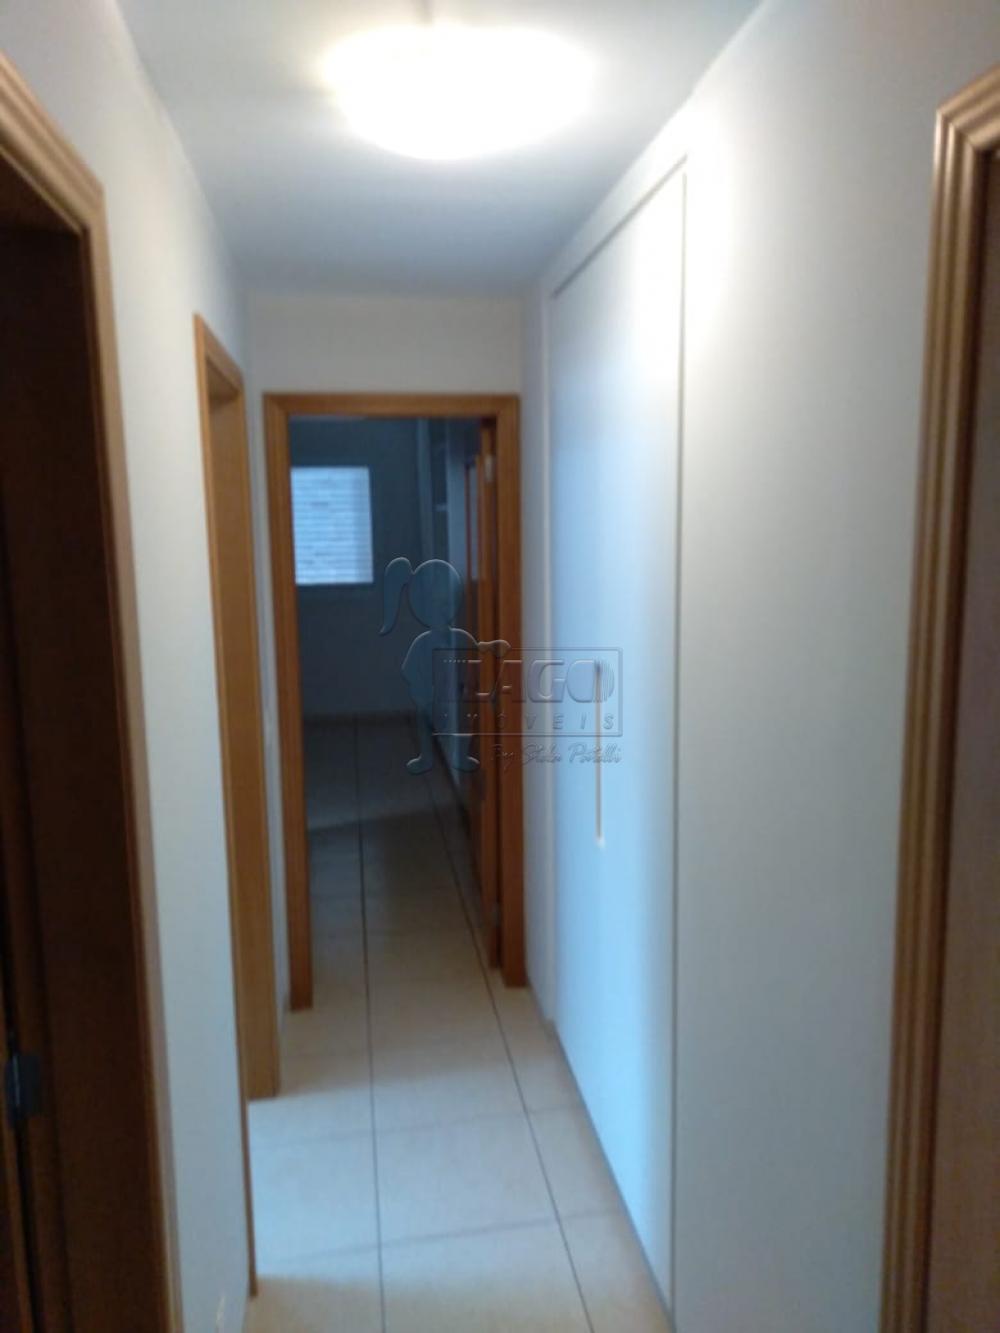 Alugar Apartamento / Padrão em Ribeirão Preto R$ 3.000,00 - Foto 4